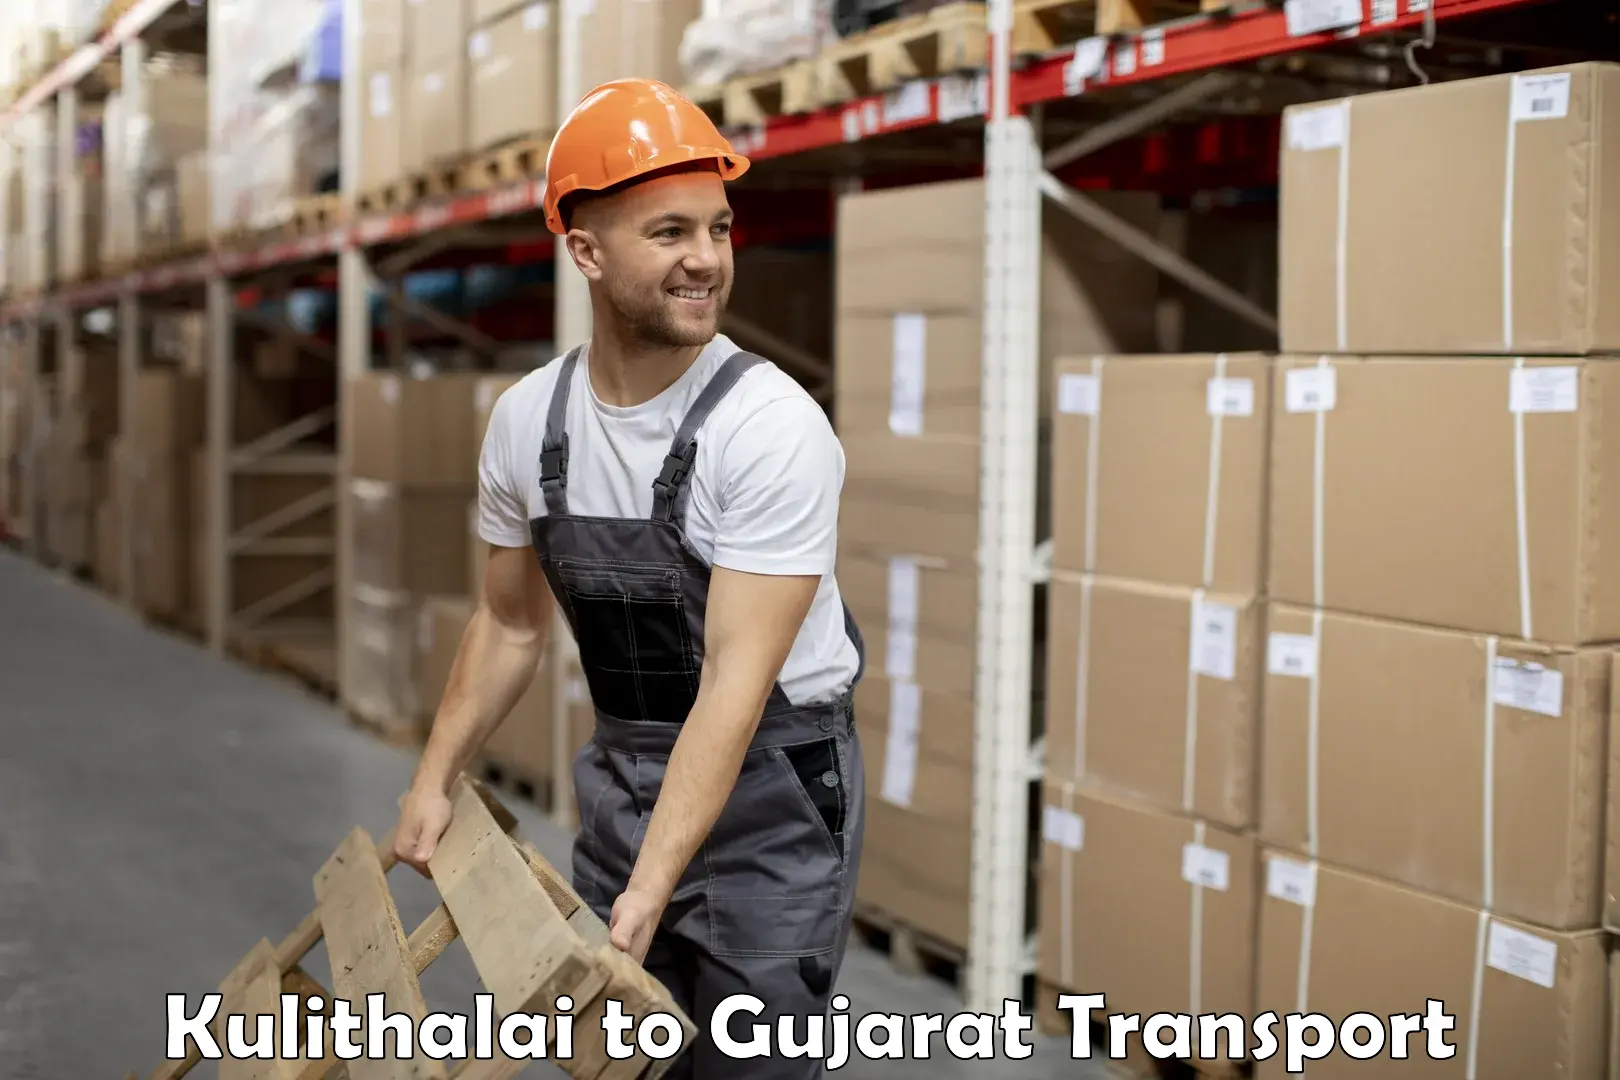 Cargo transportation services Kulithalai to IIT Gandhi Nagar